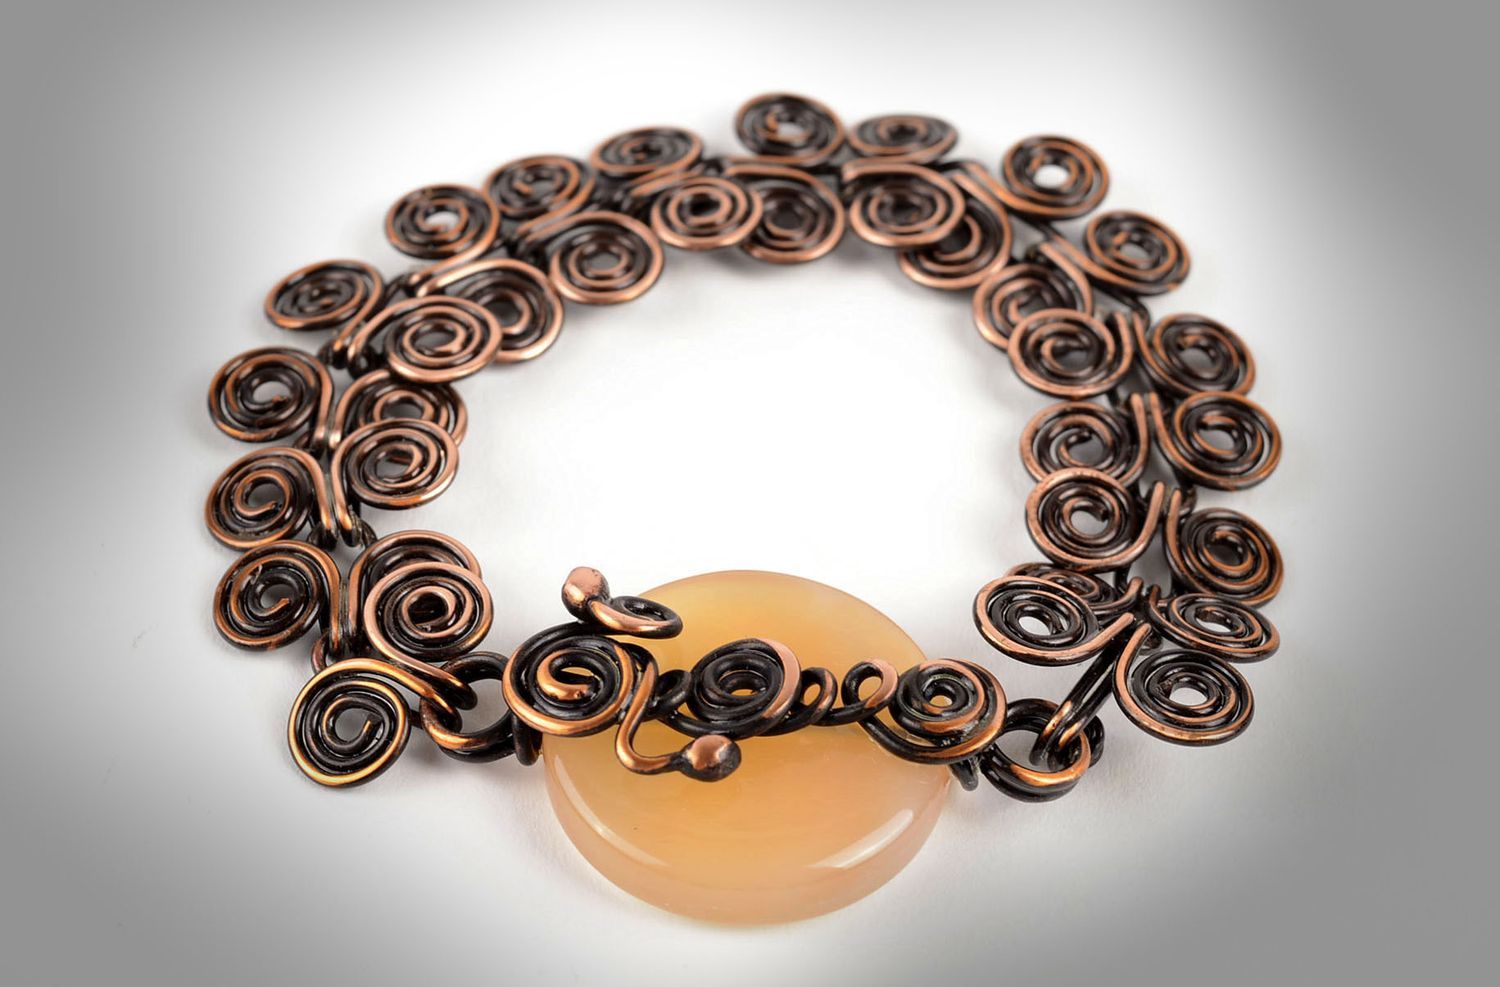 Copper bracelet fashion jewelry handmade metal jewelry wrist bracelet photo 5